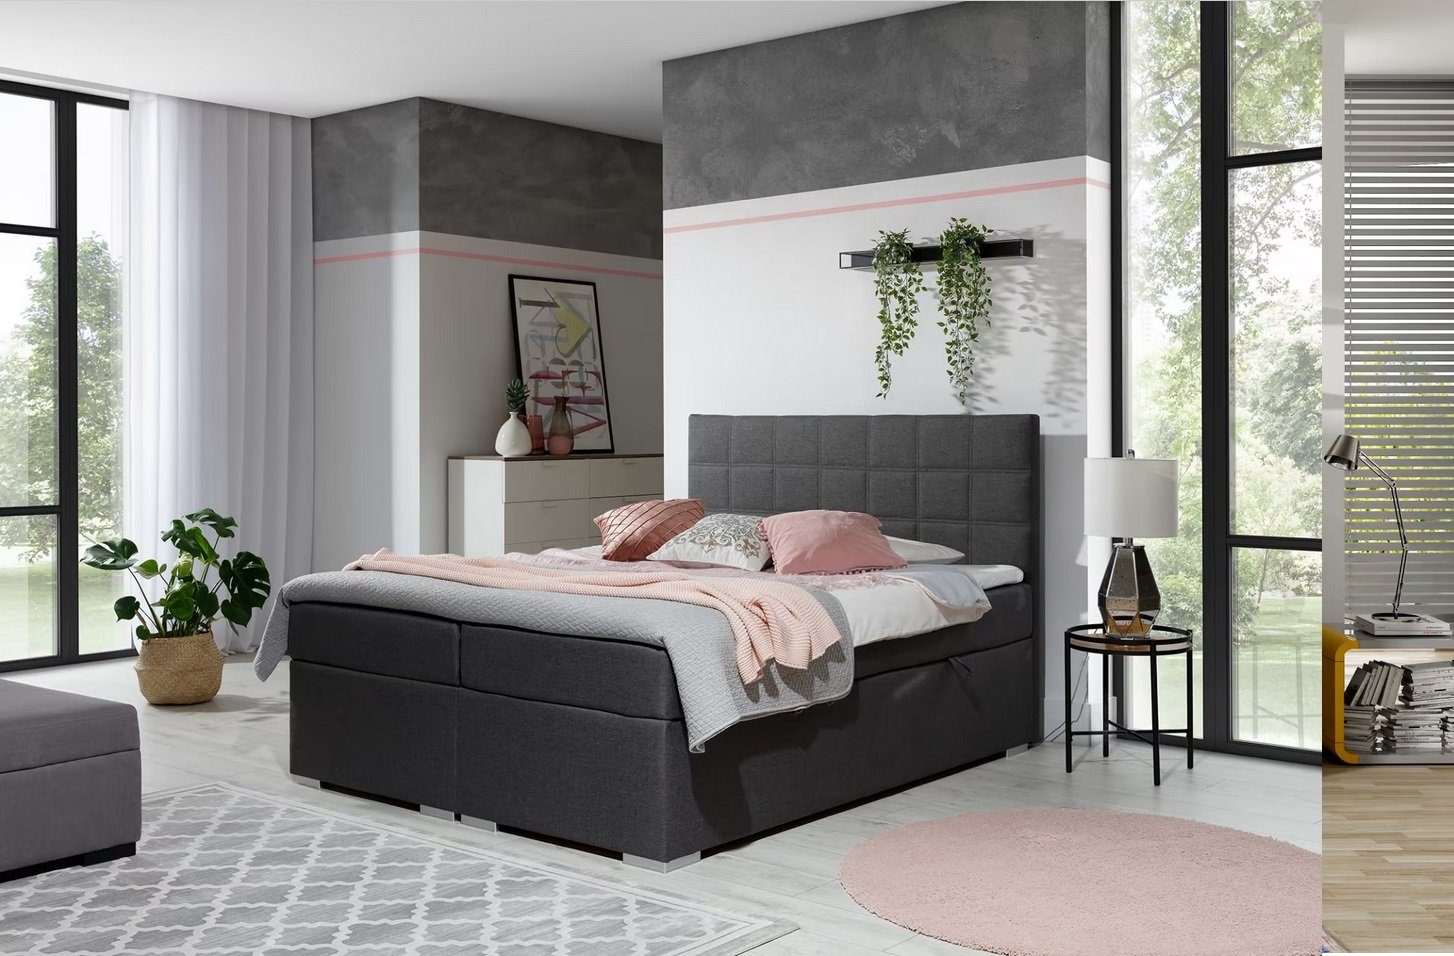 JVmoebel Bett, Doppelbett mit Fedekernmatratze Bett Schlafzimmer Modern Luxus